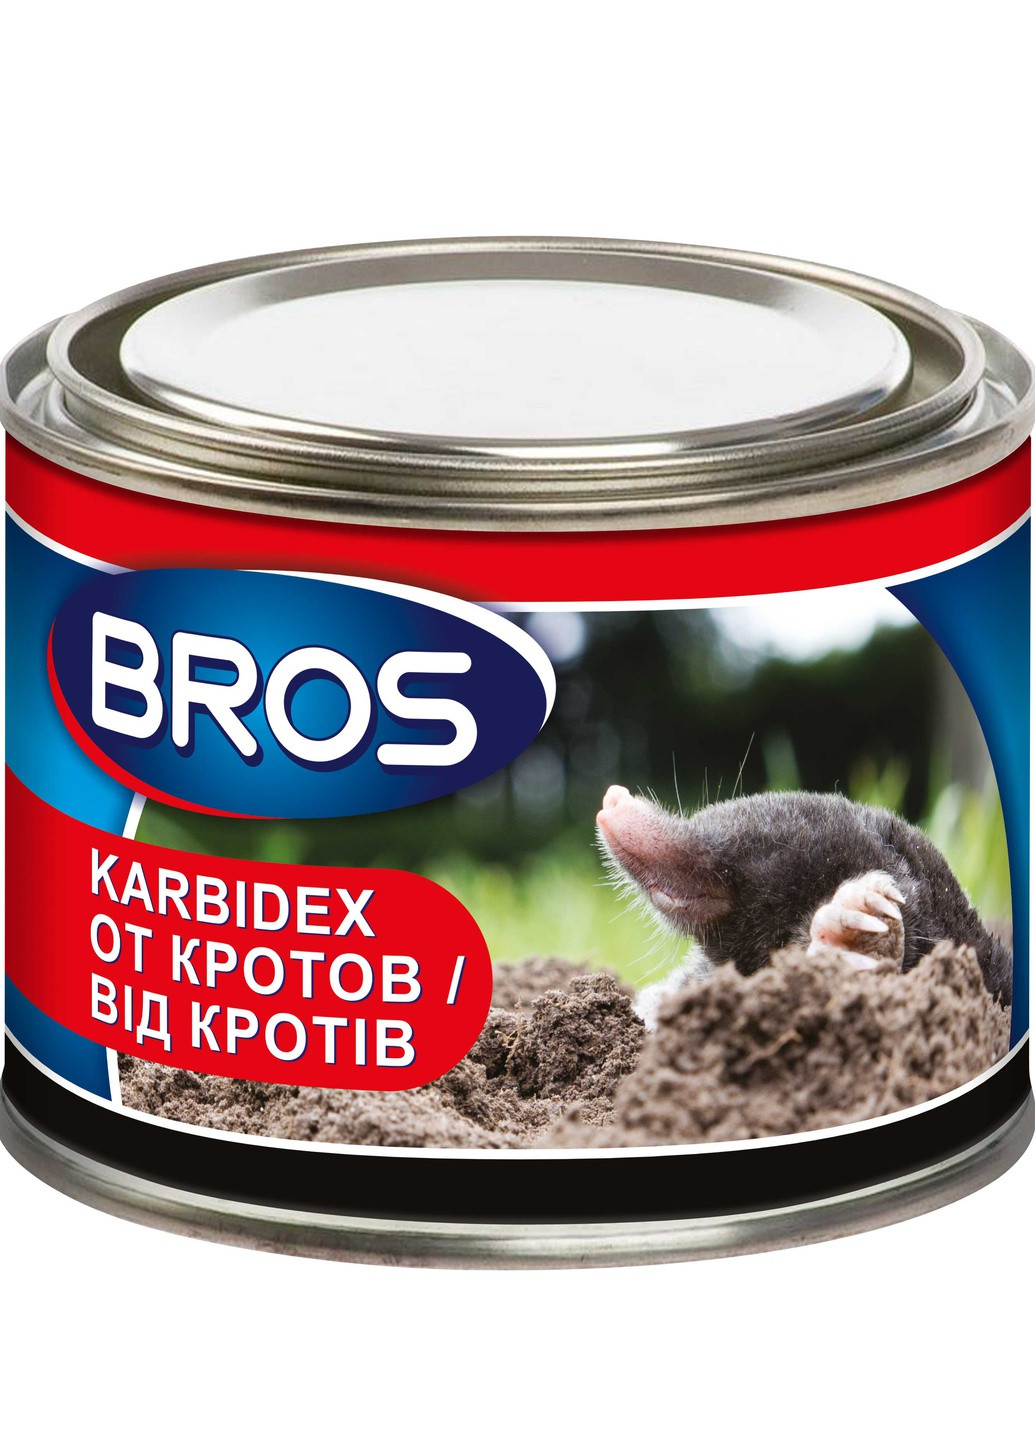 Гранулы для отпугивания кротов Karbidex Брос () 500 г Bros (259793576)